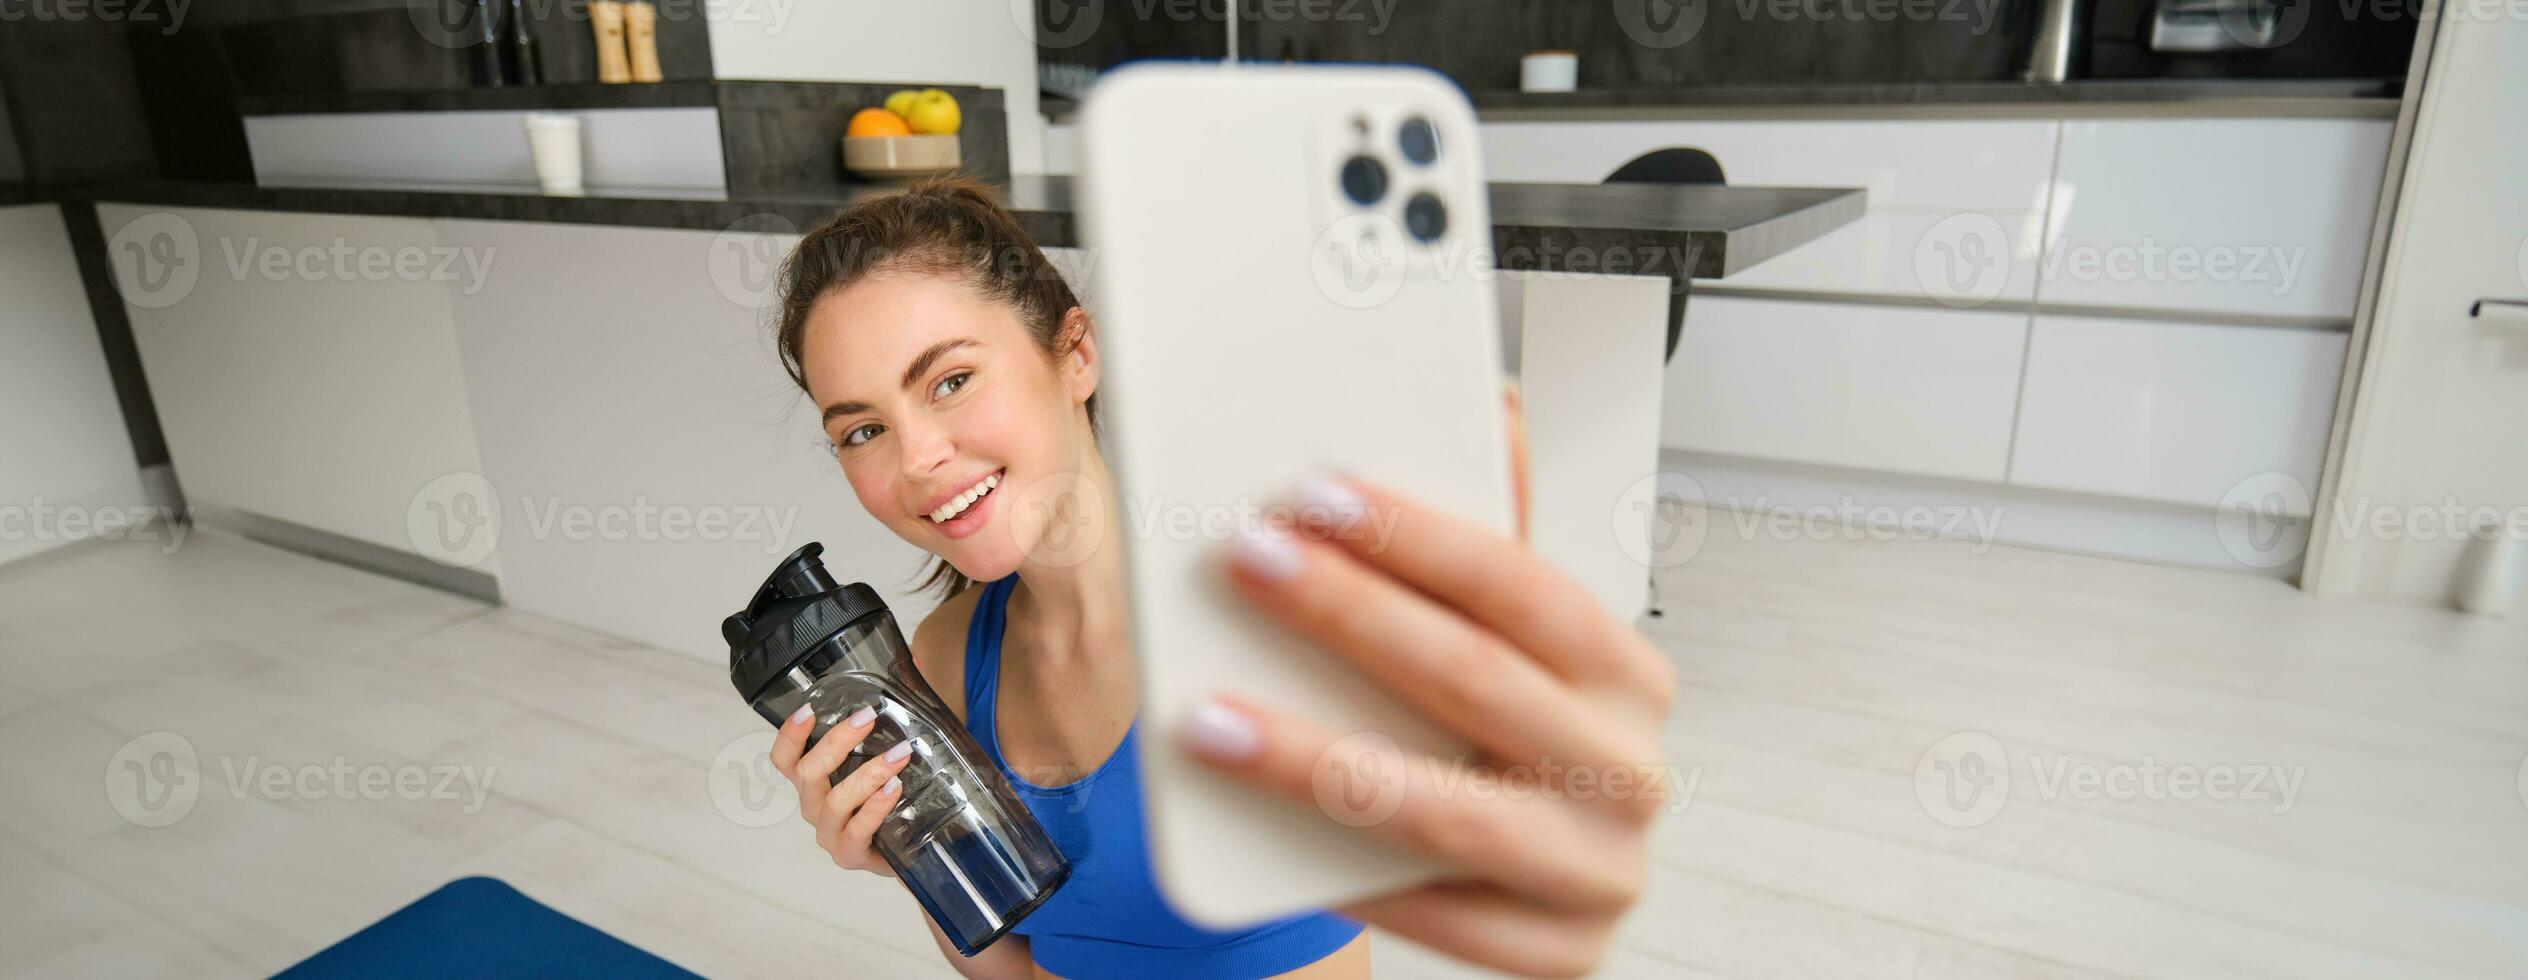 retrato do desportista leva selfie com água garrafa dentro vivo sala, detém Smartphone e poses para foto enquanto fazendo ginástica exercite-se